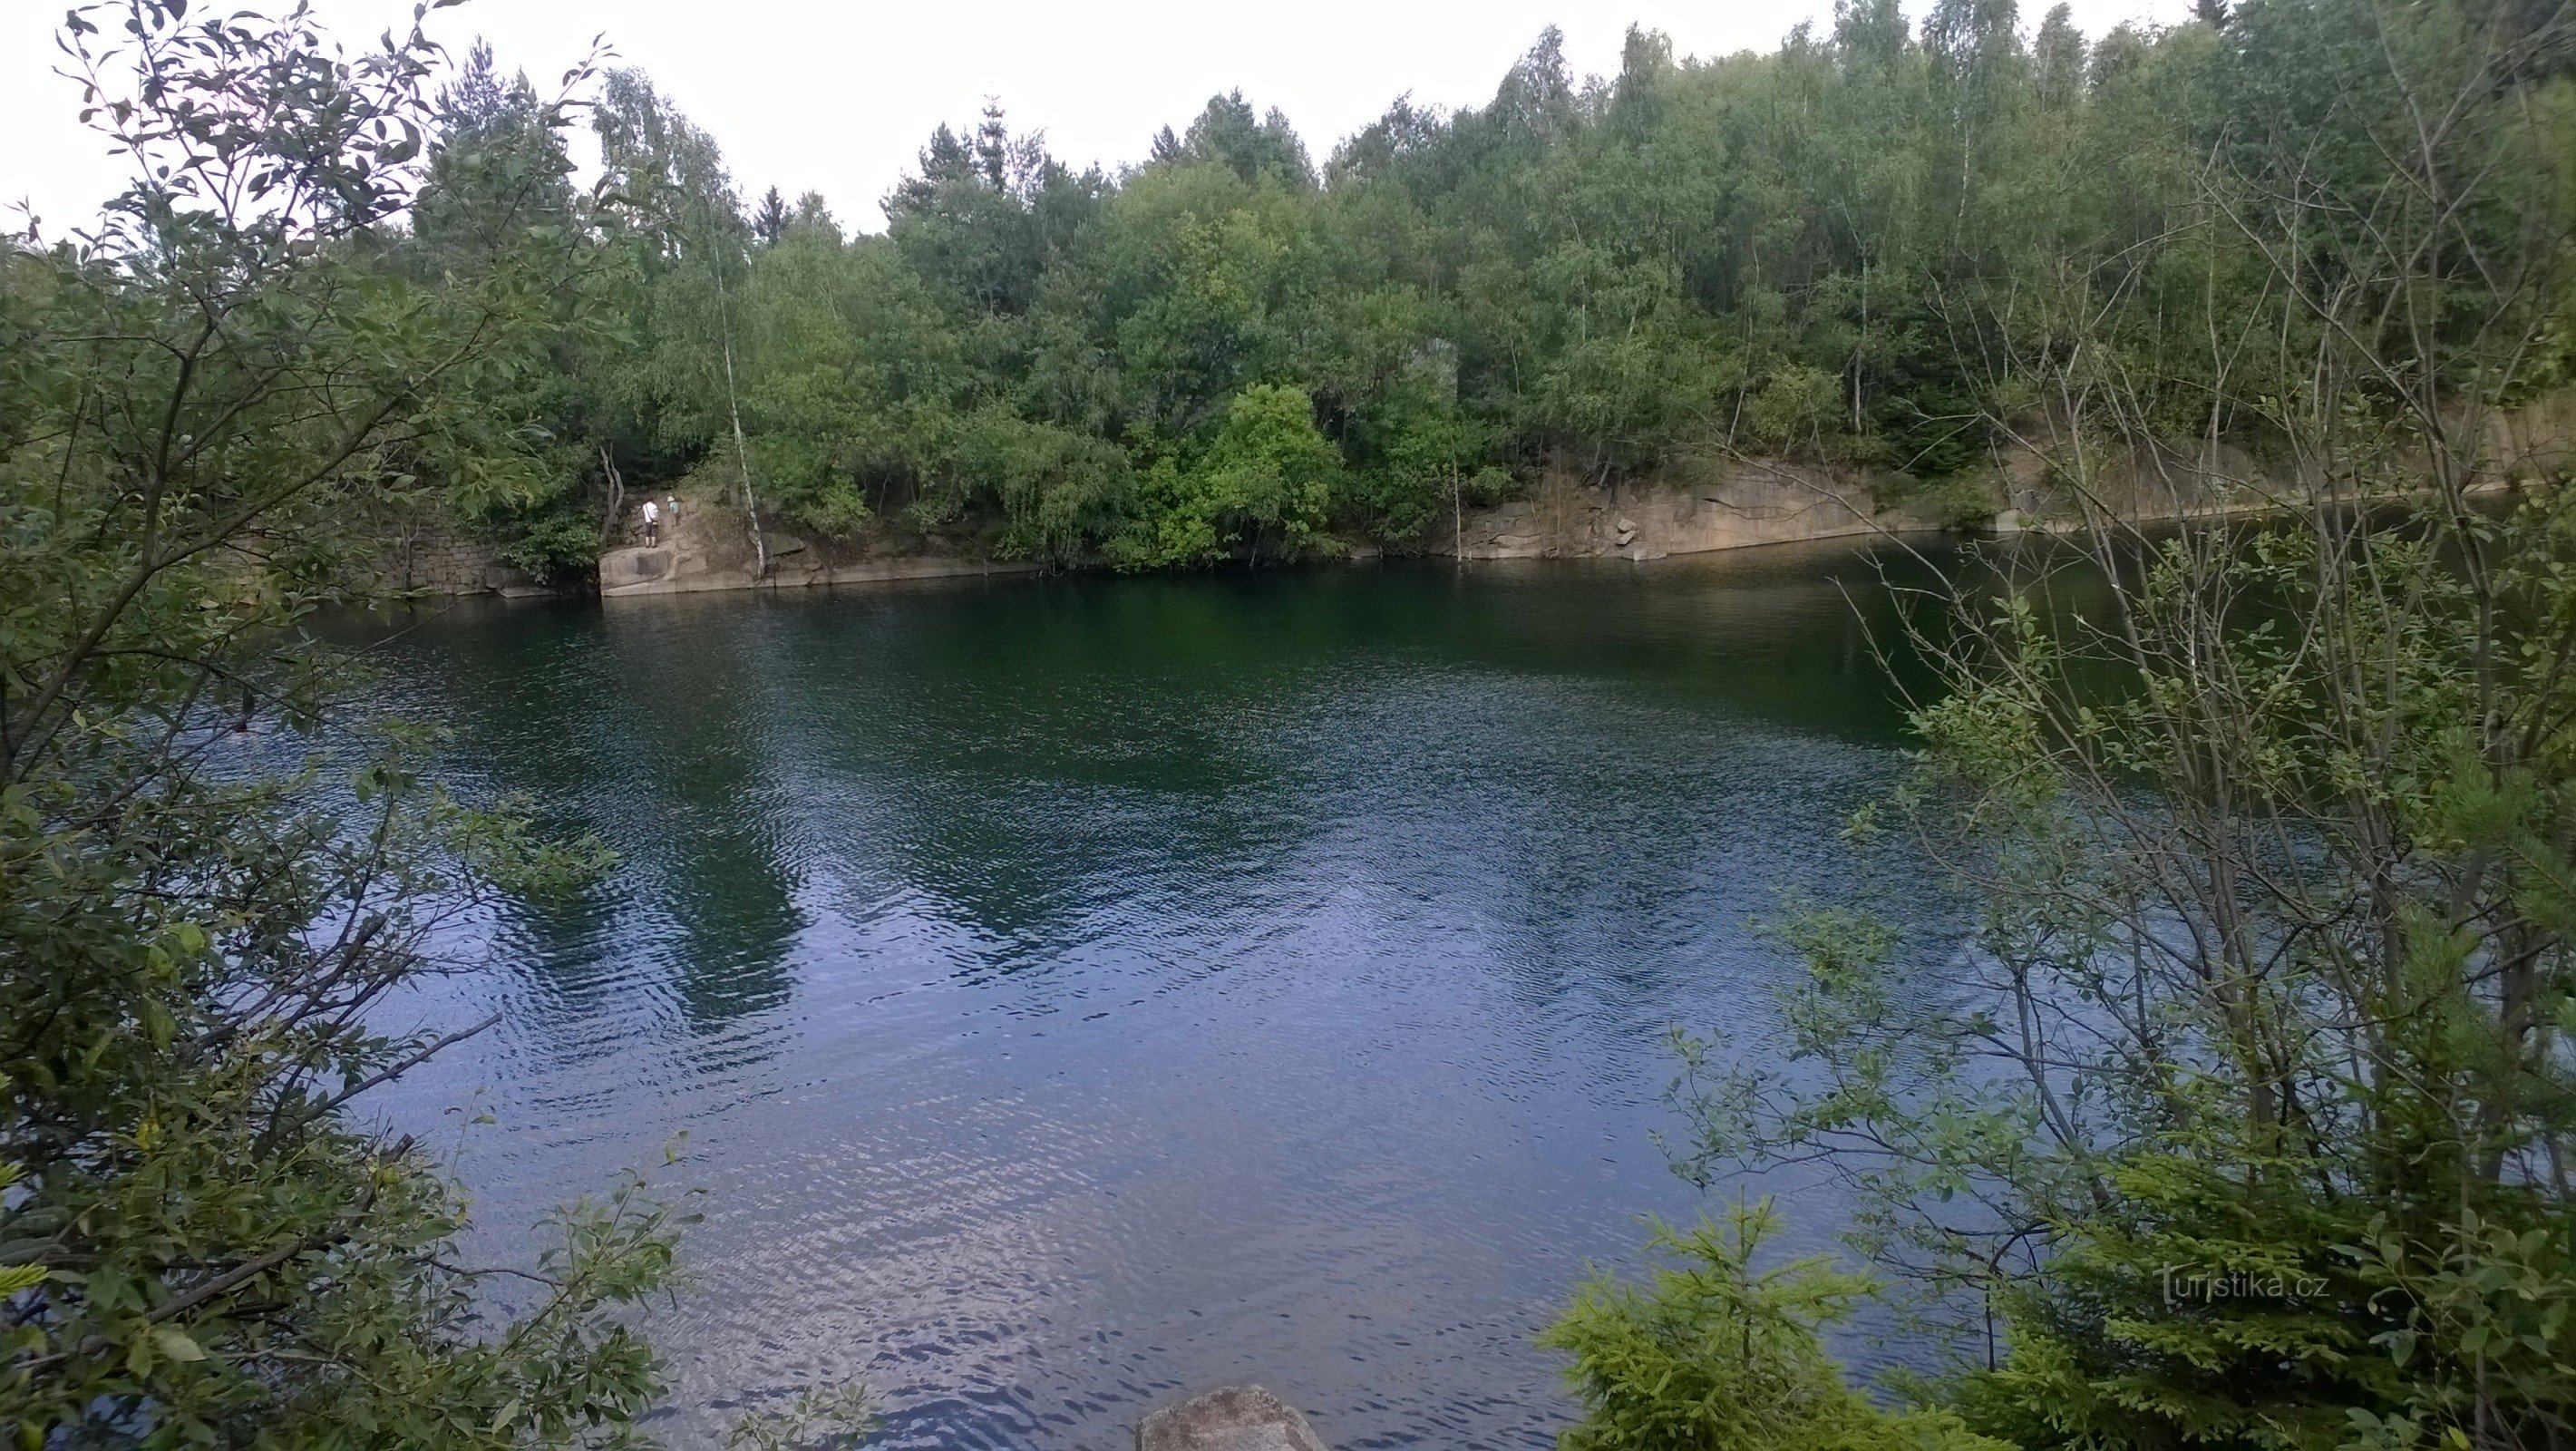 Lipnické lomy - một nơi tuyệt đẹp để bơi lội mùa hè.